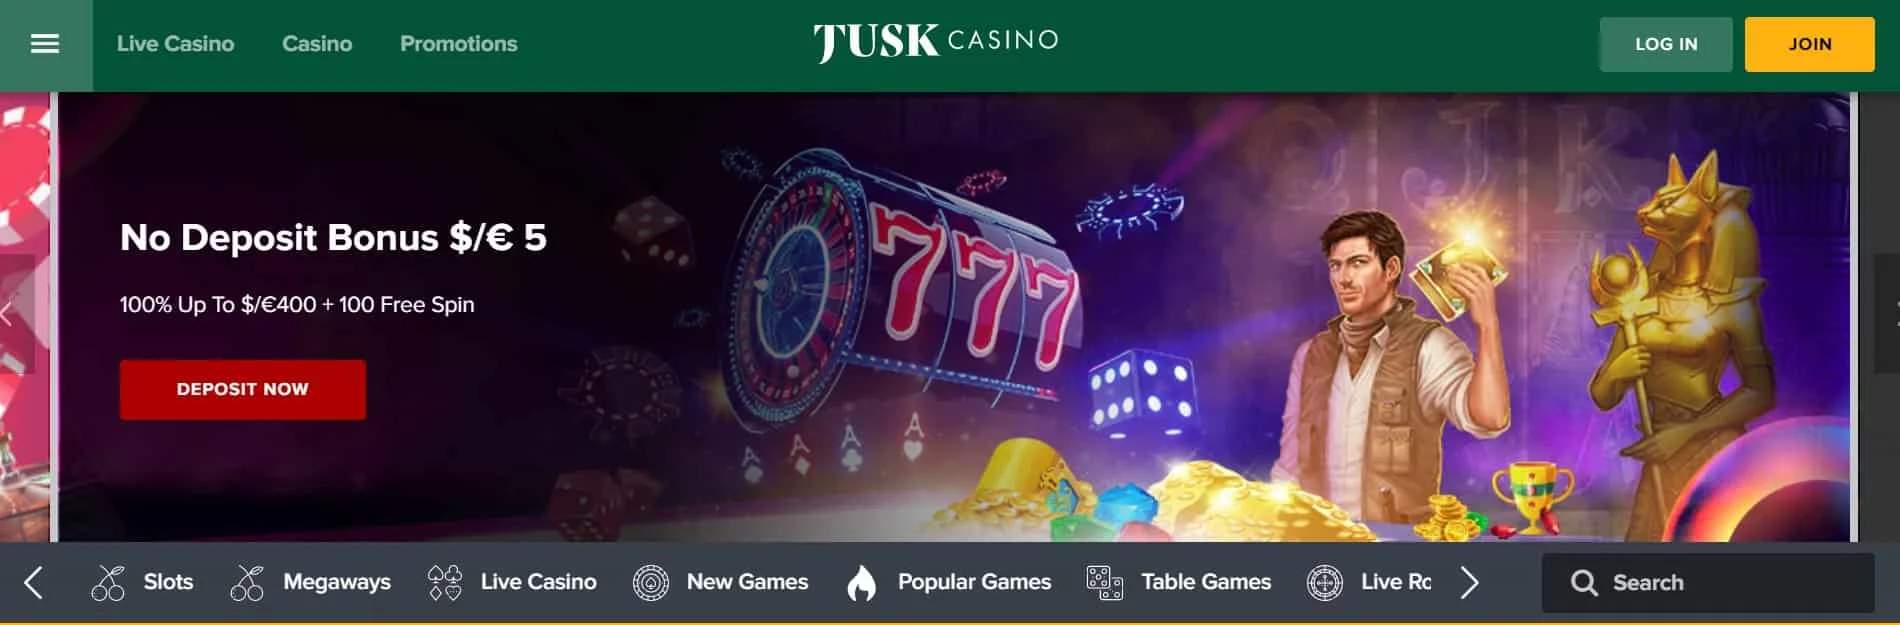 tusk casino homepage banner-min (1)